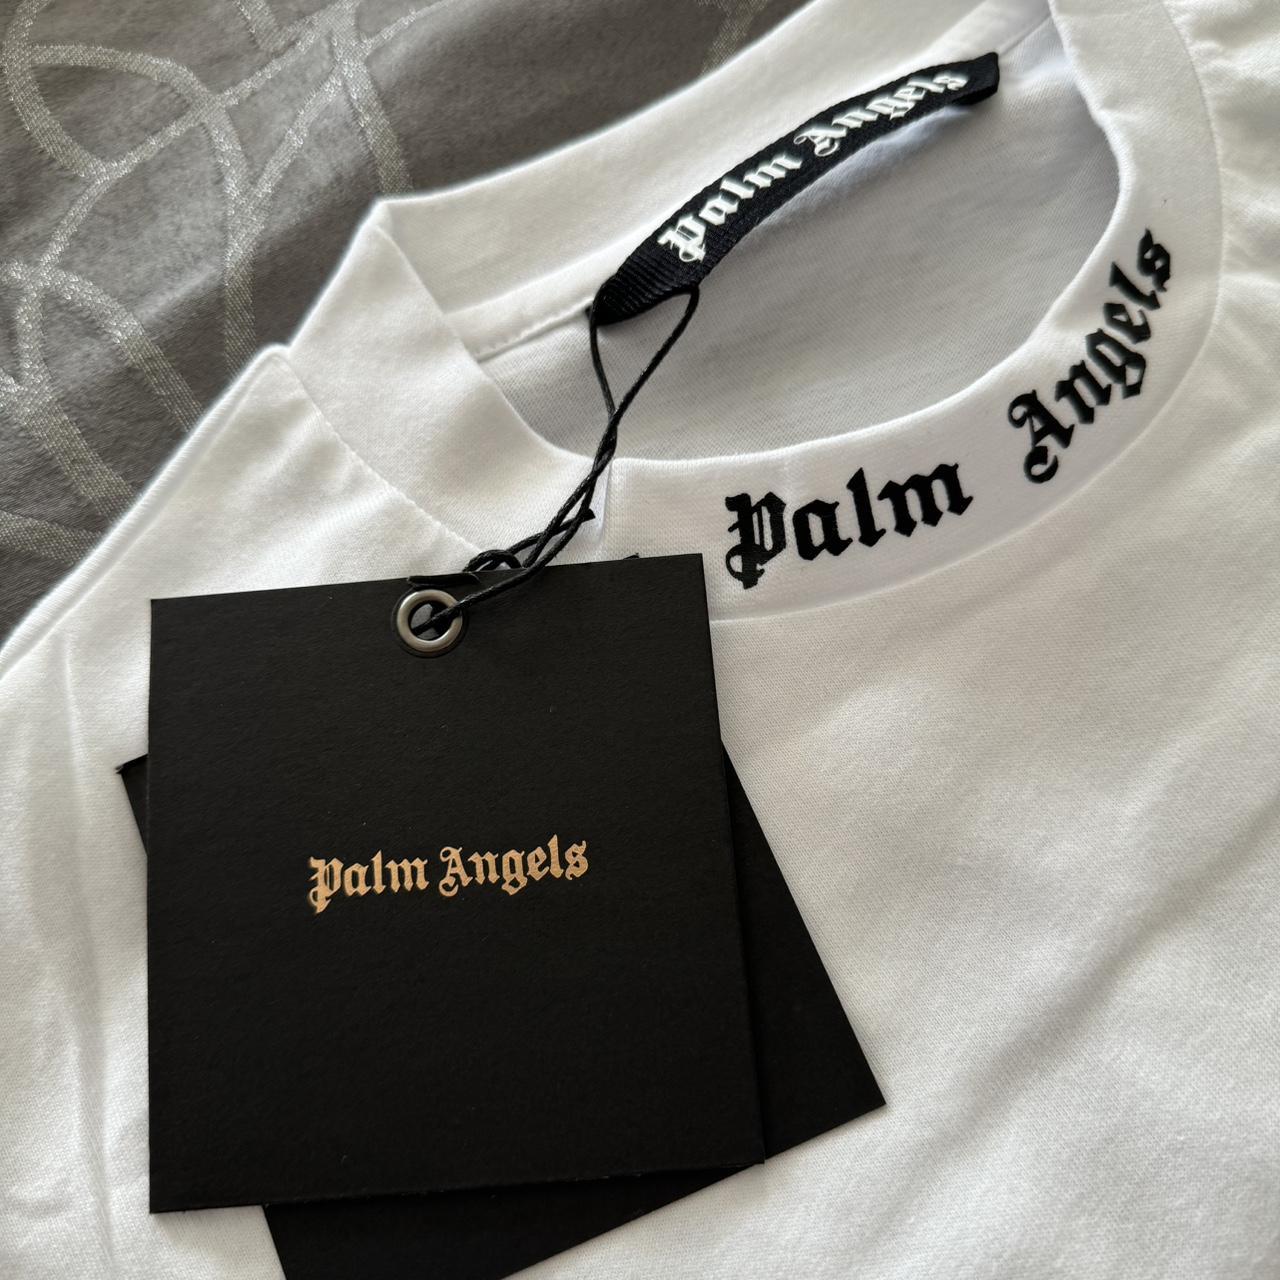 fake palm angels shirt - Depop